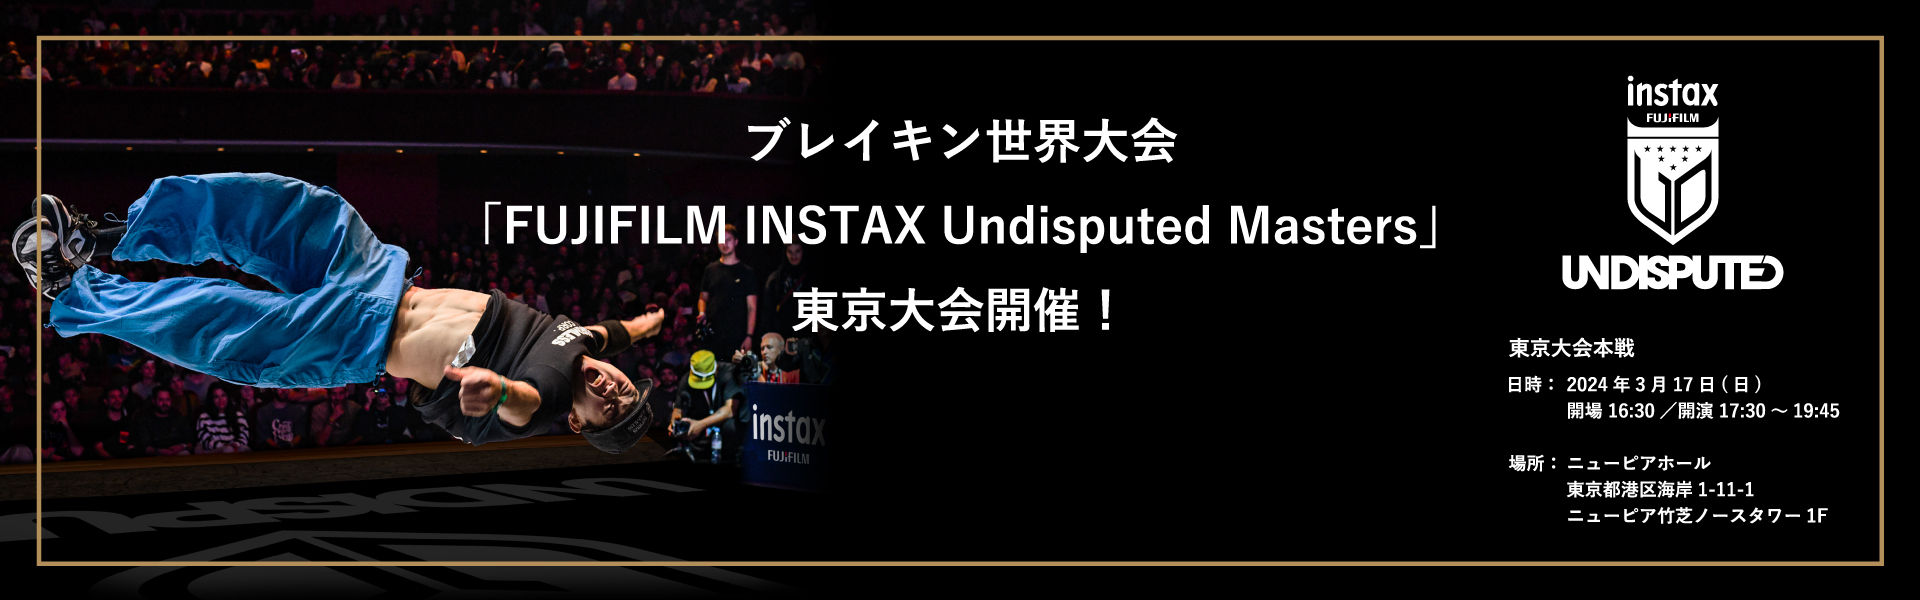 インスタントカメラ【INSTAX＜チェキ＞】公式サイト